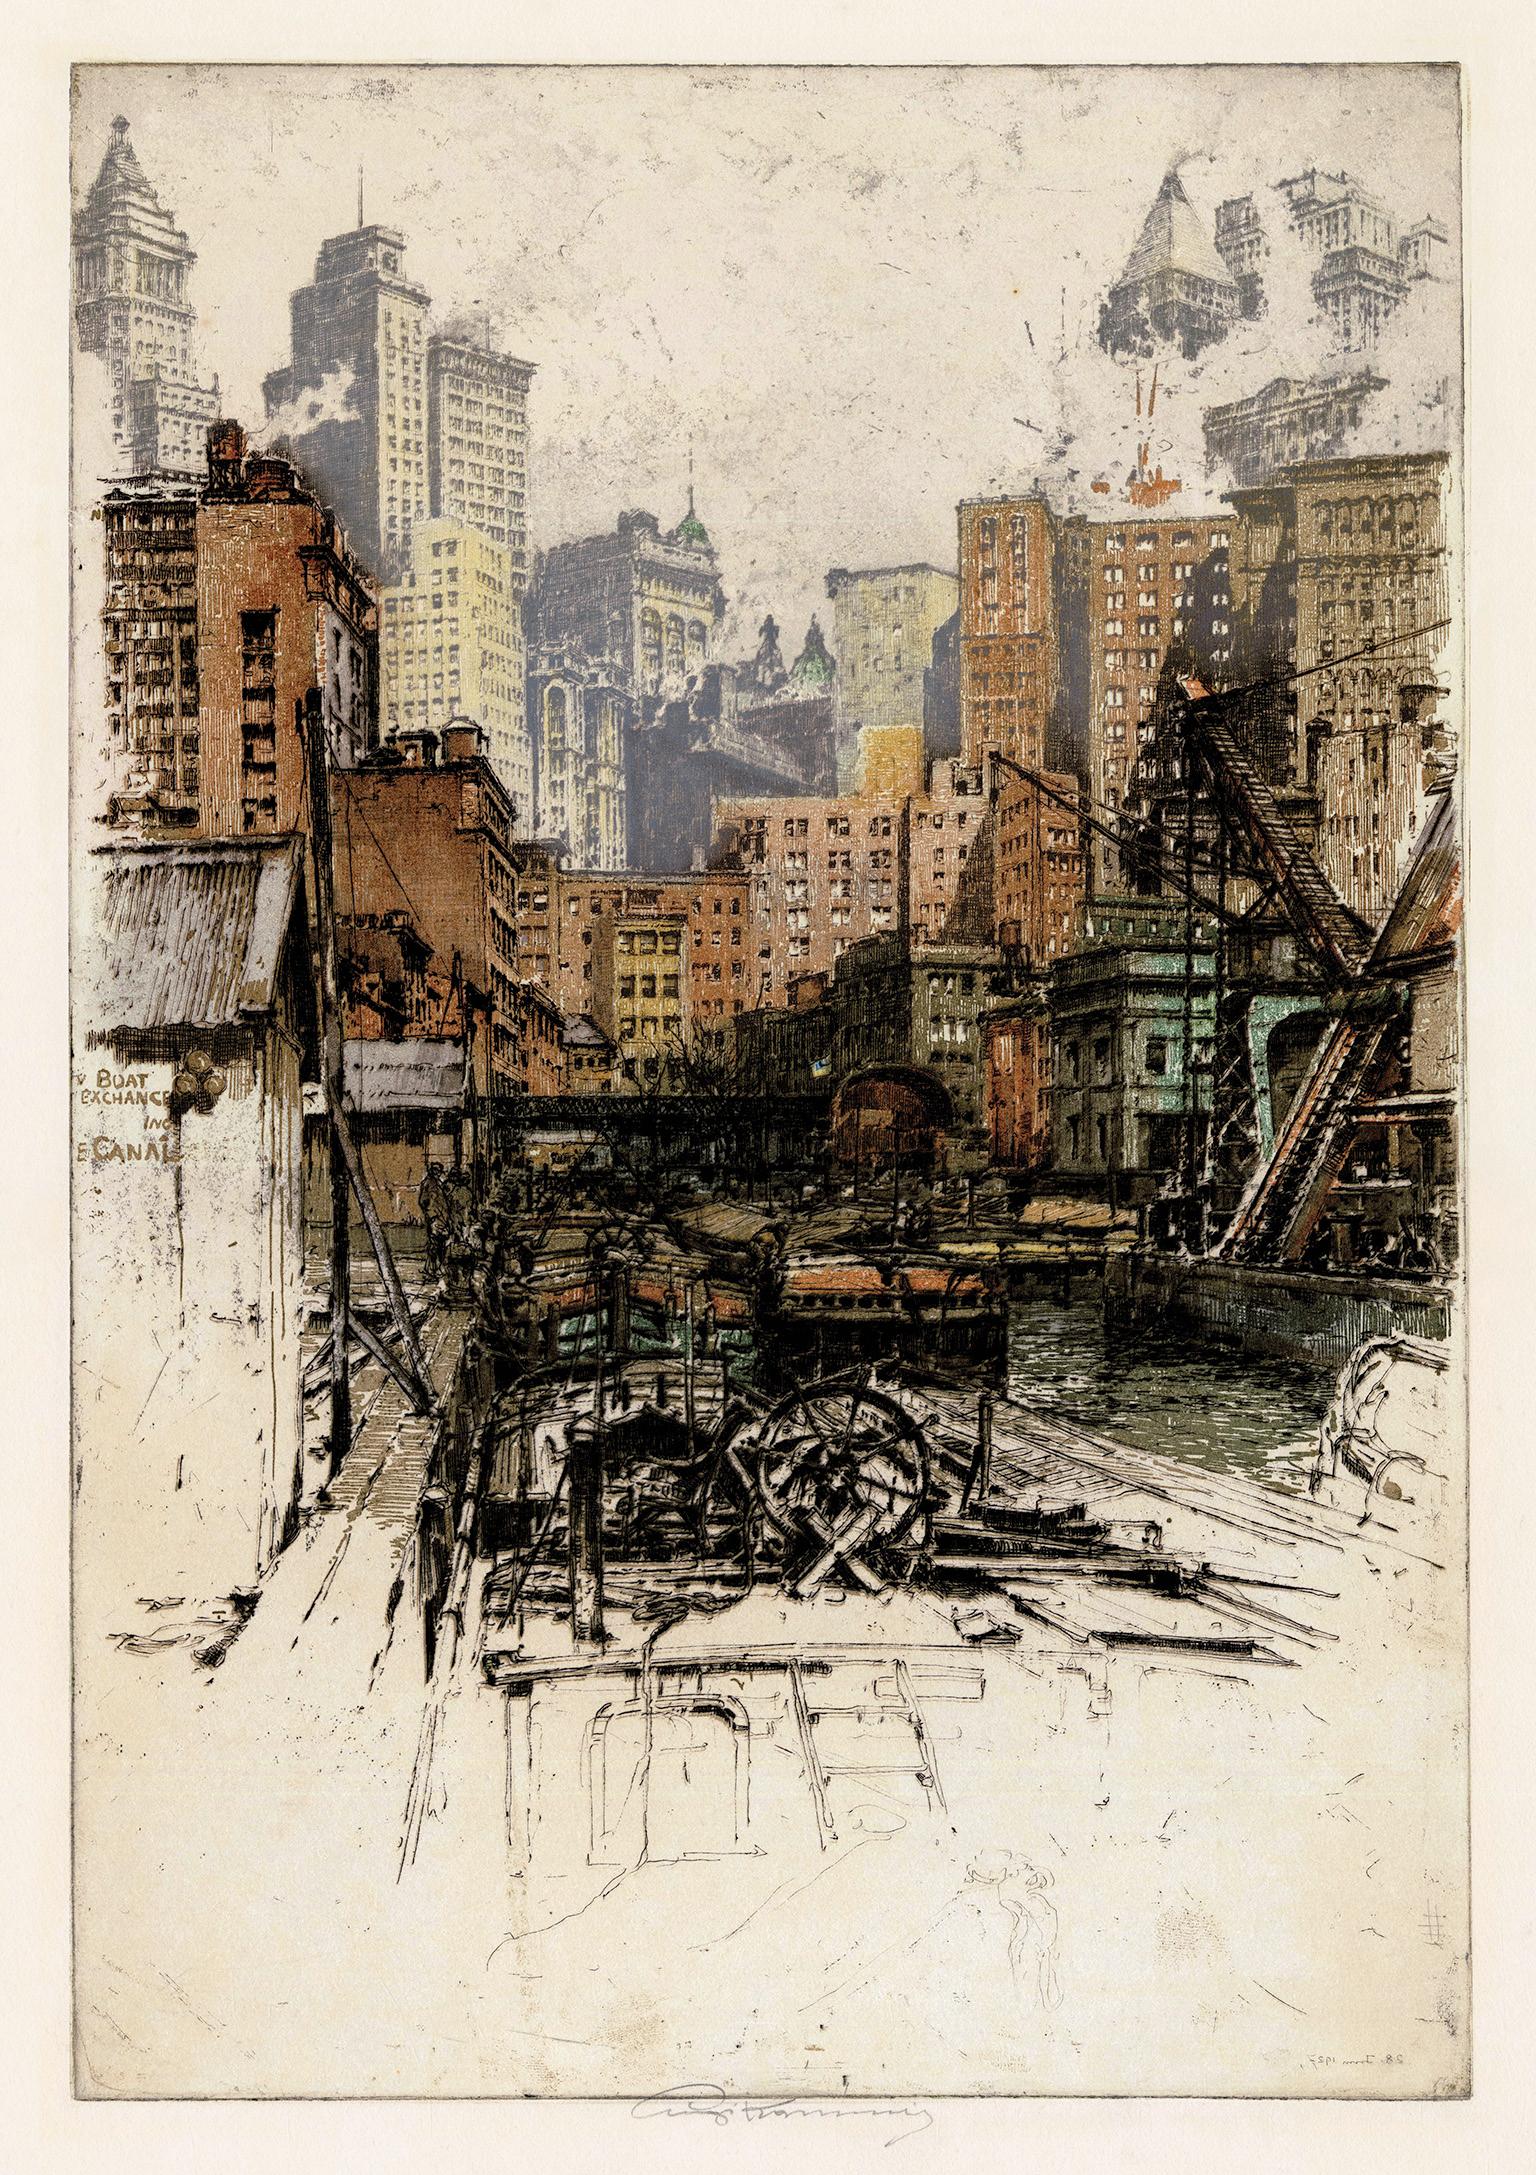 'Coenties Slip' — 1920s Lower Manhattan, Financial District